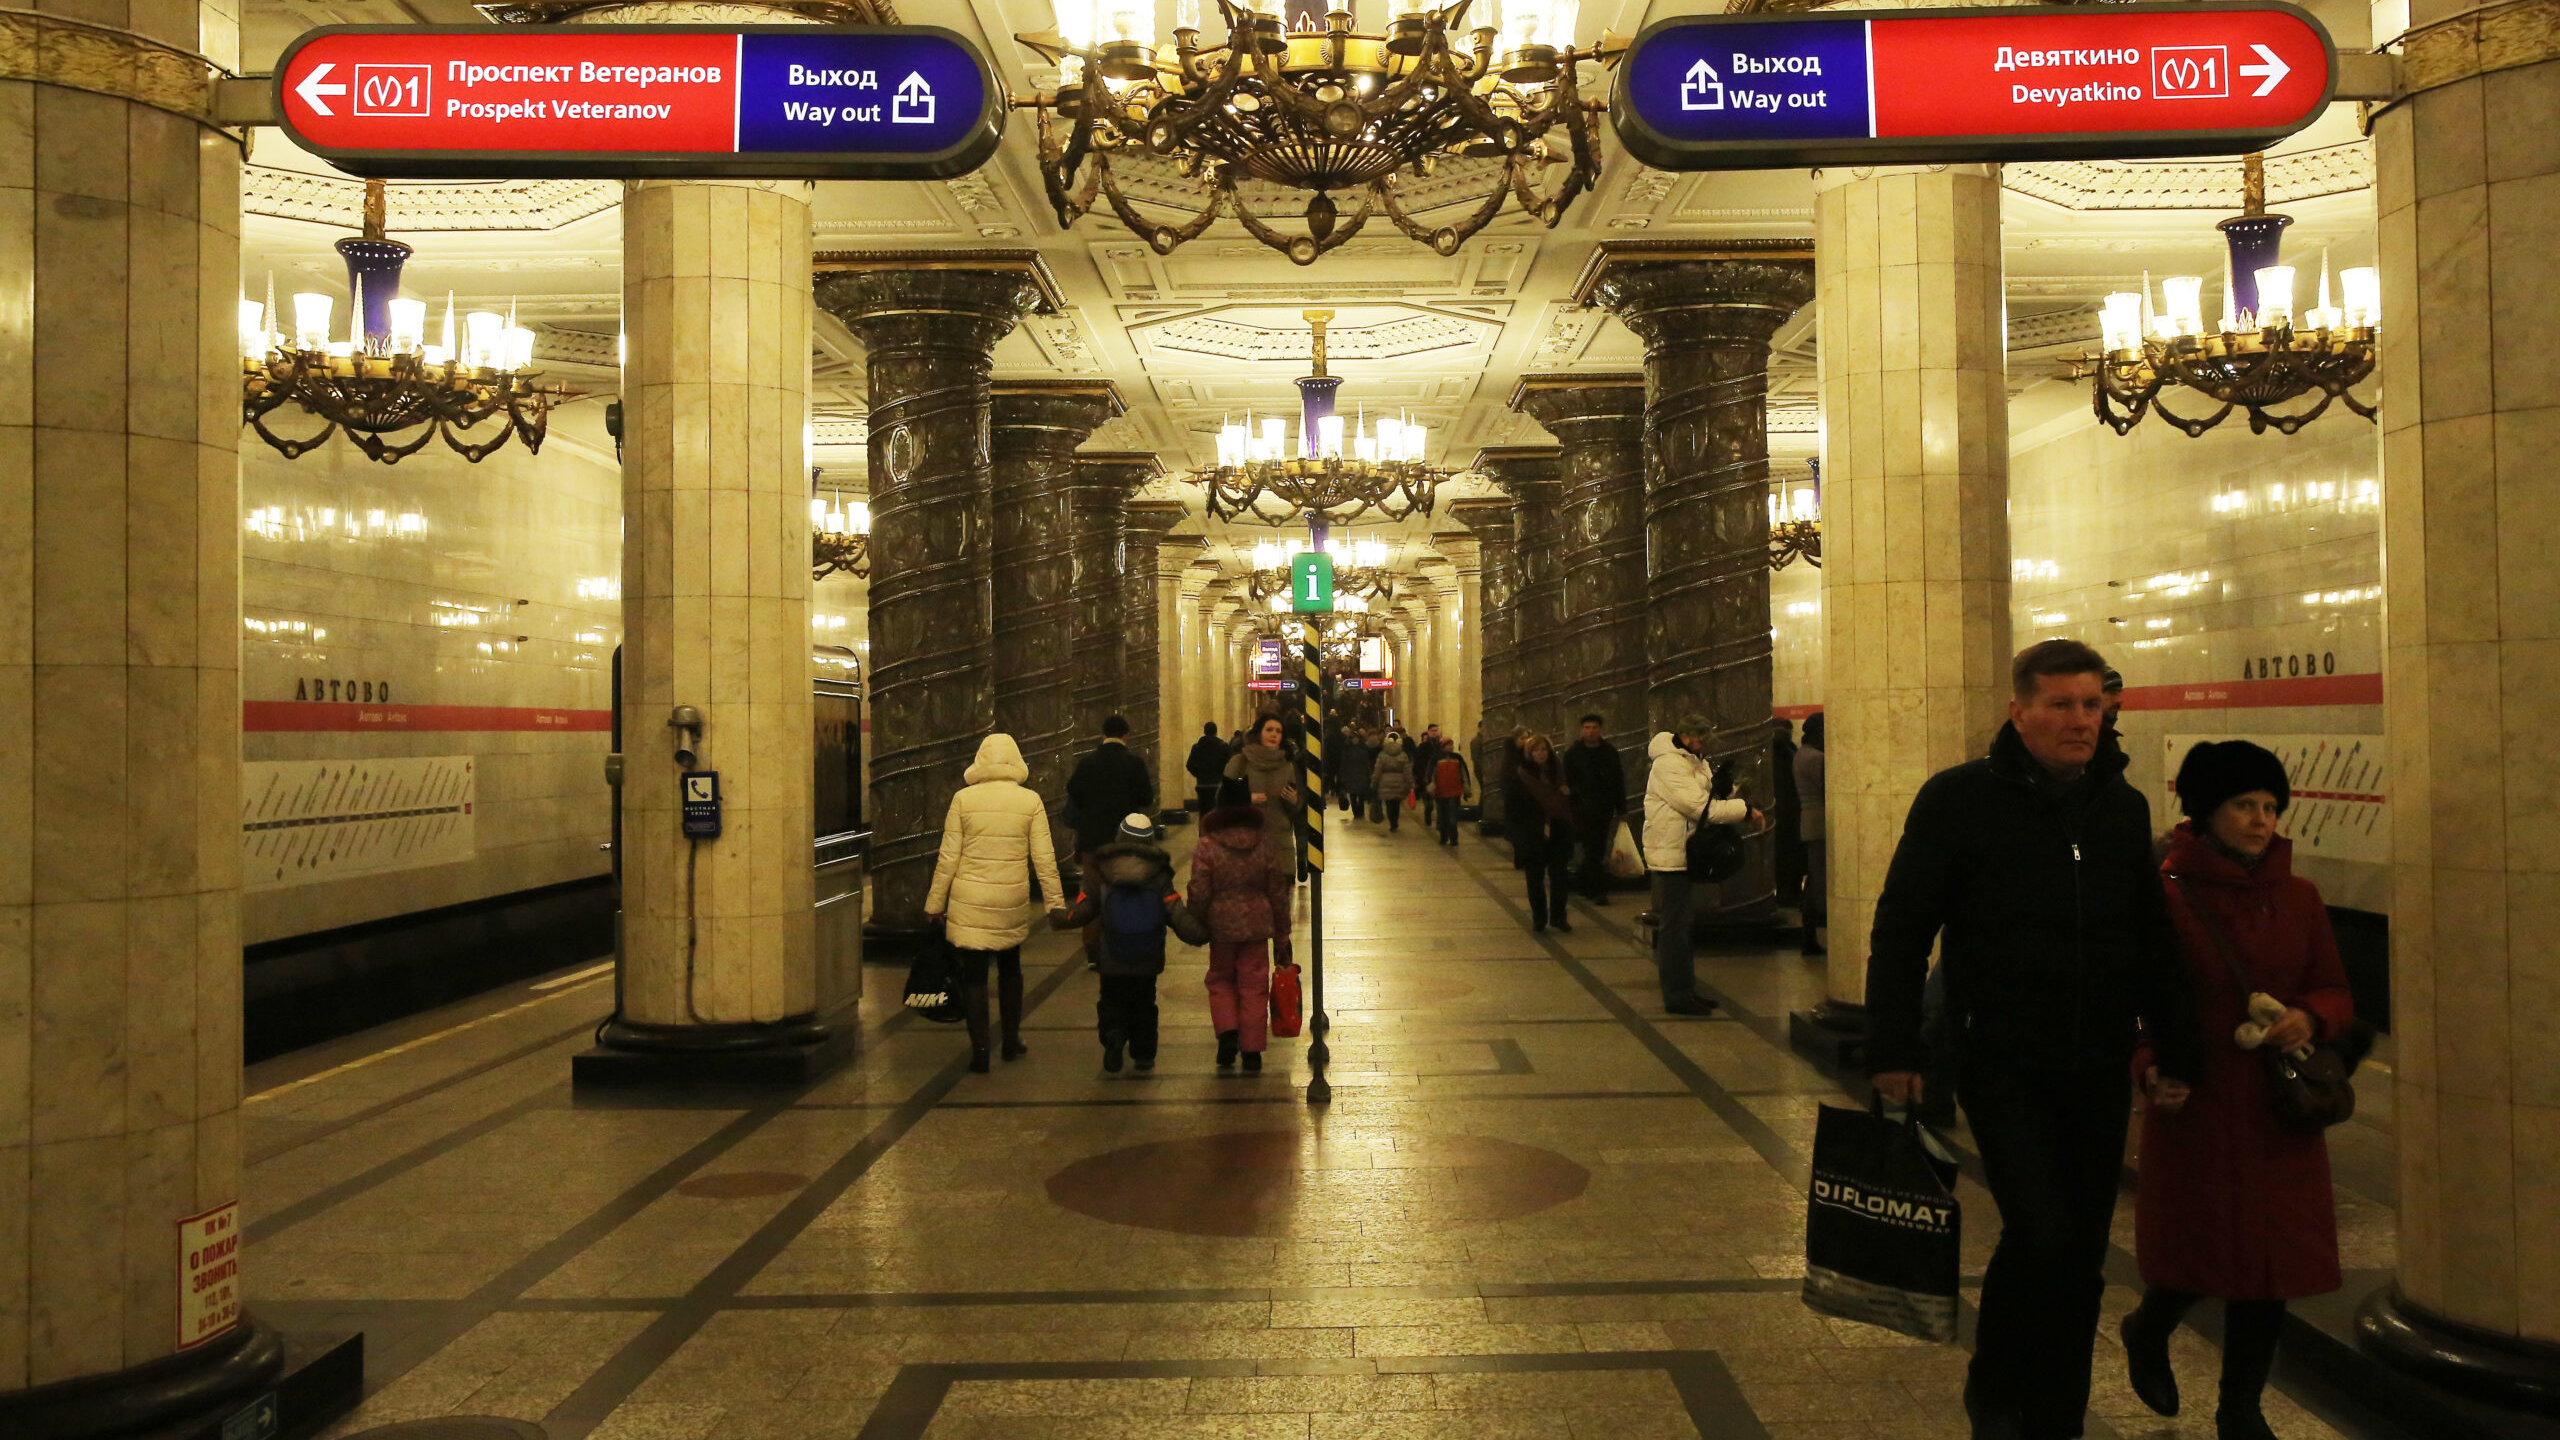 В воскресенье в Петербурге «заминировали» метро, отели, госпиталь и торговые центры